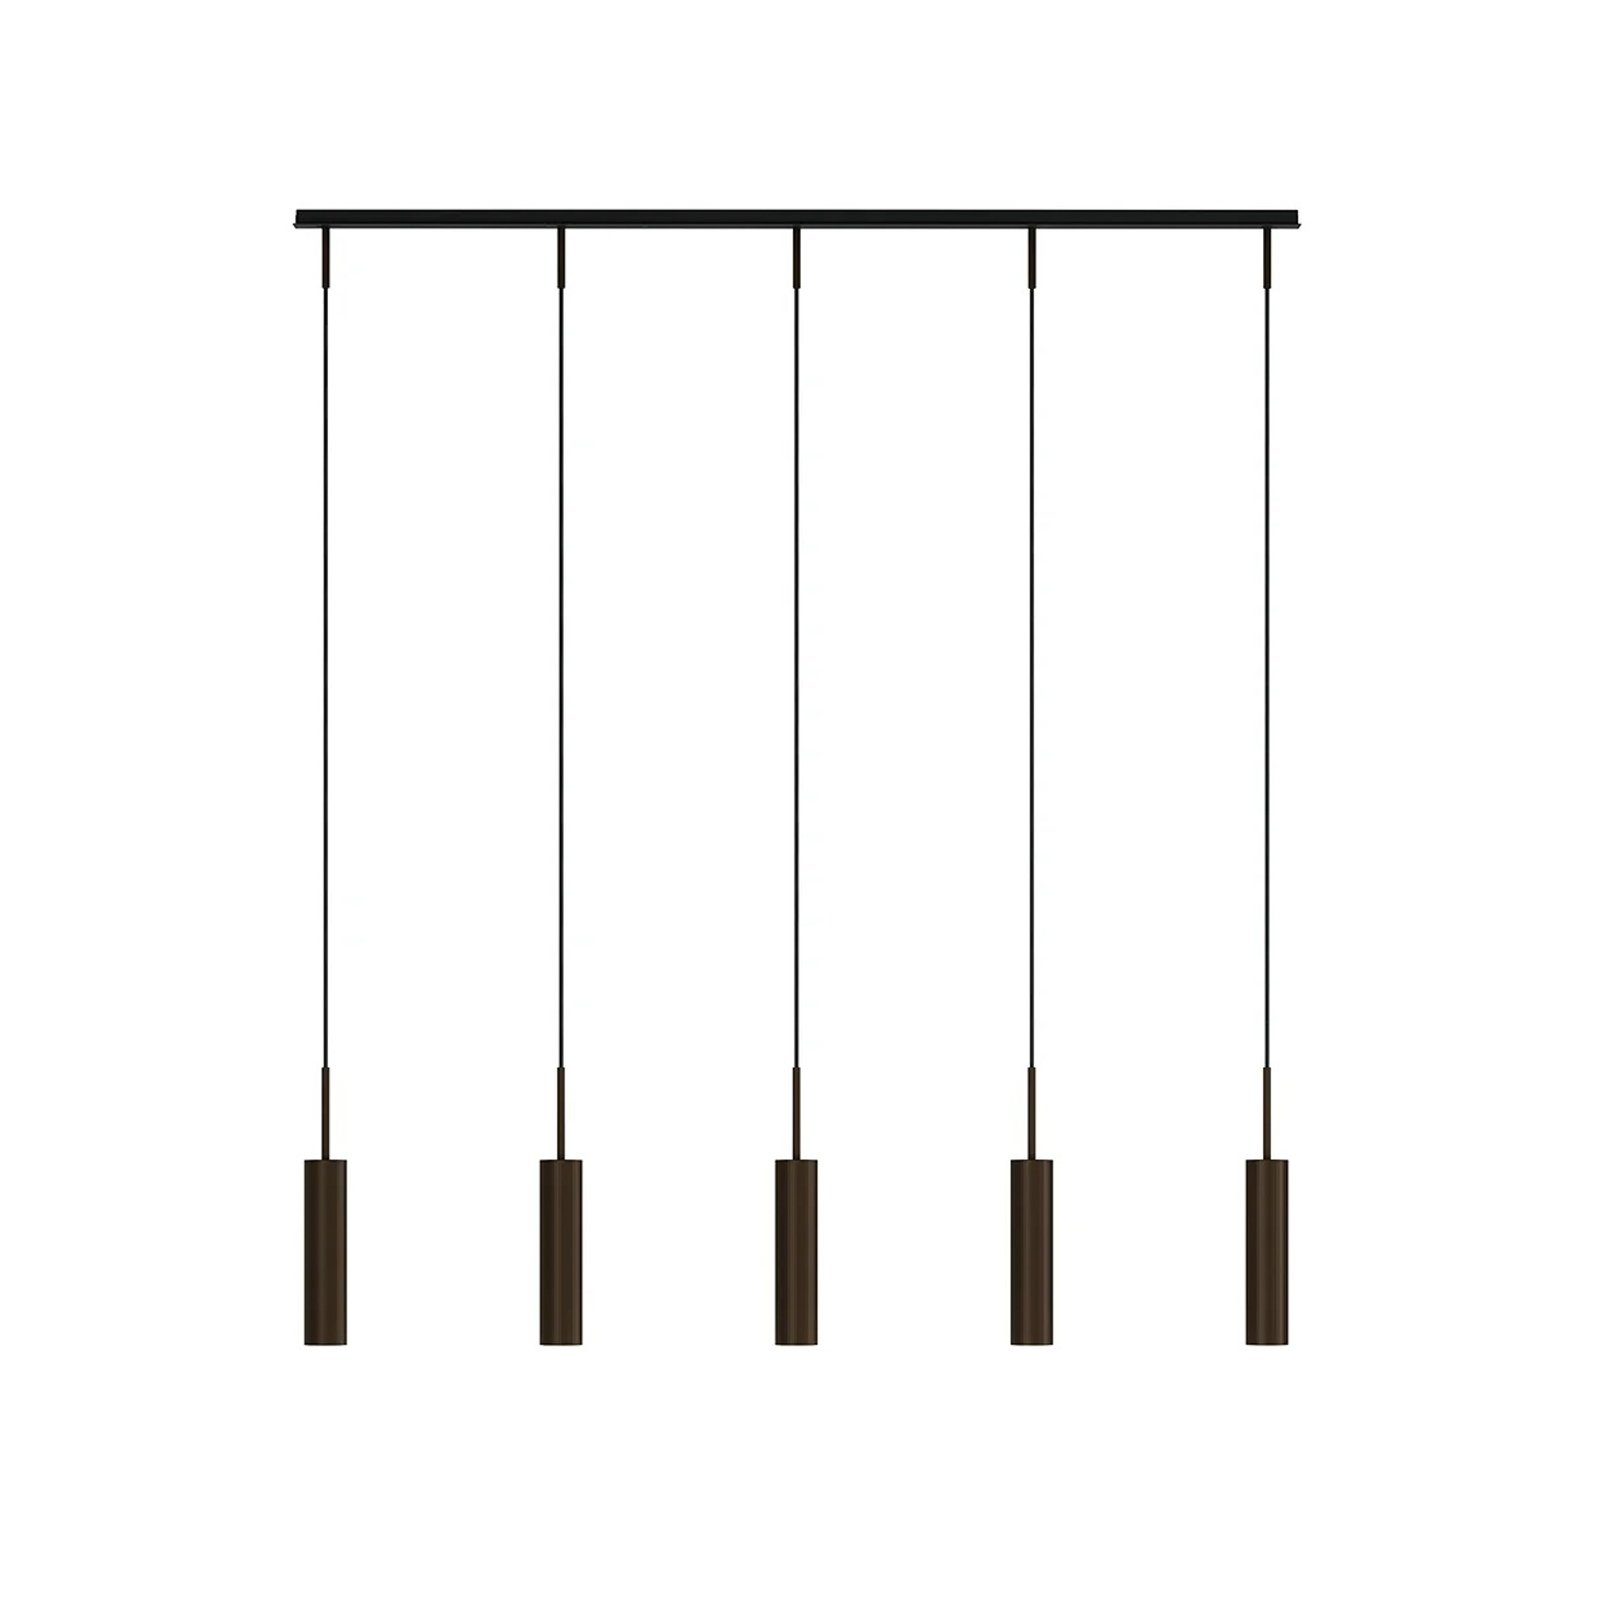 Audo hanglamp Tubulaire Rail, 5-lamps, bronskleurig, aluminium